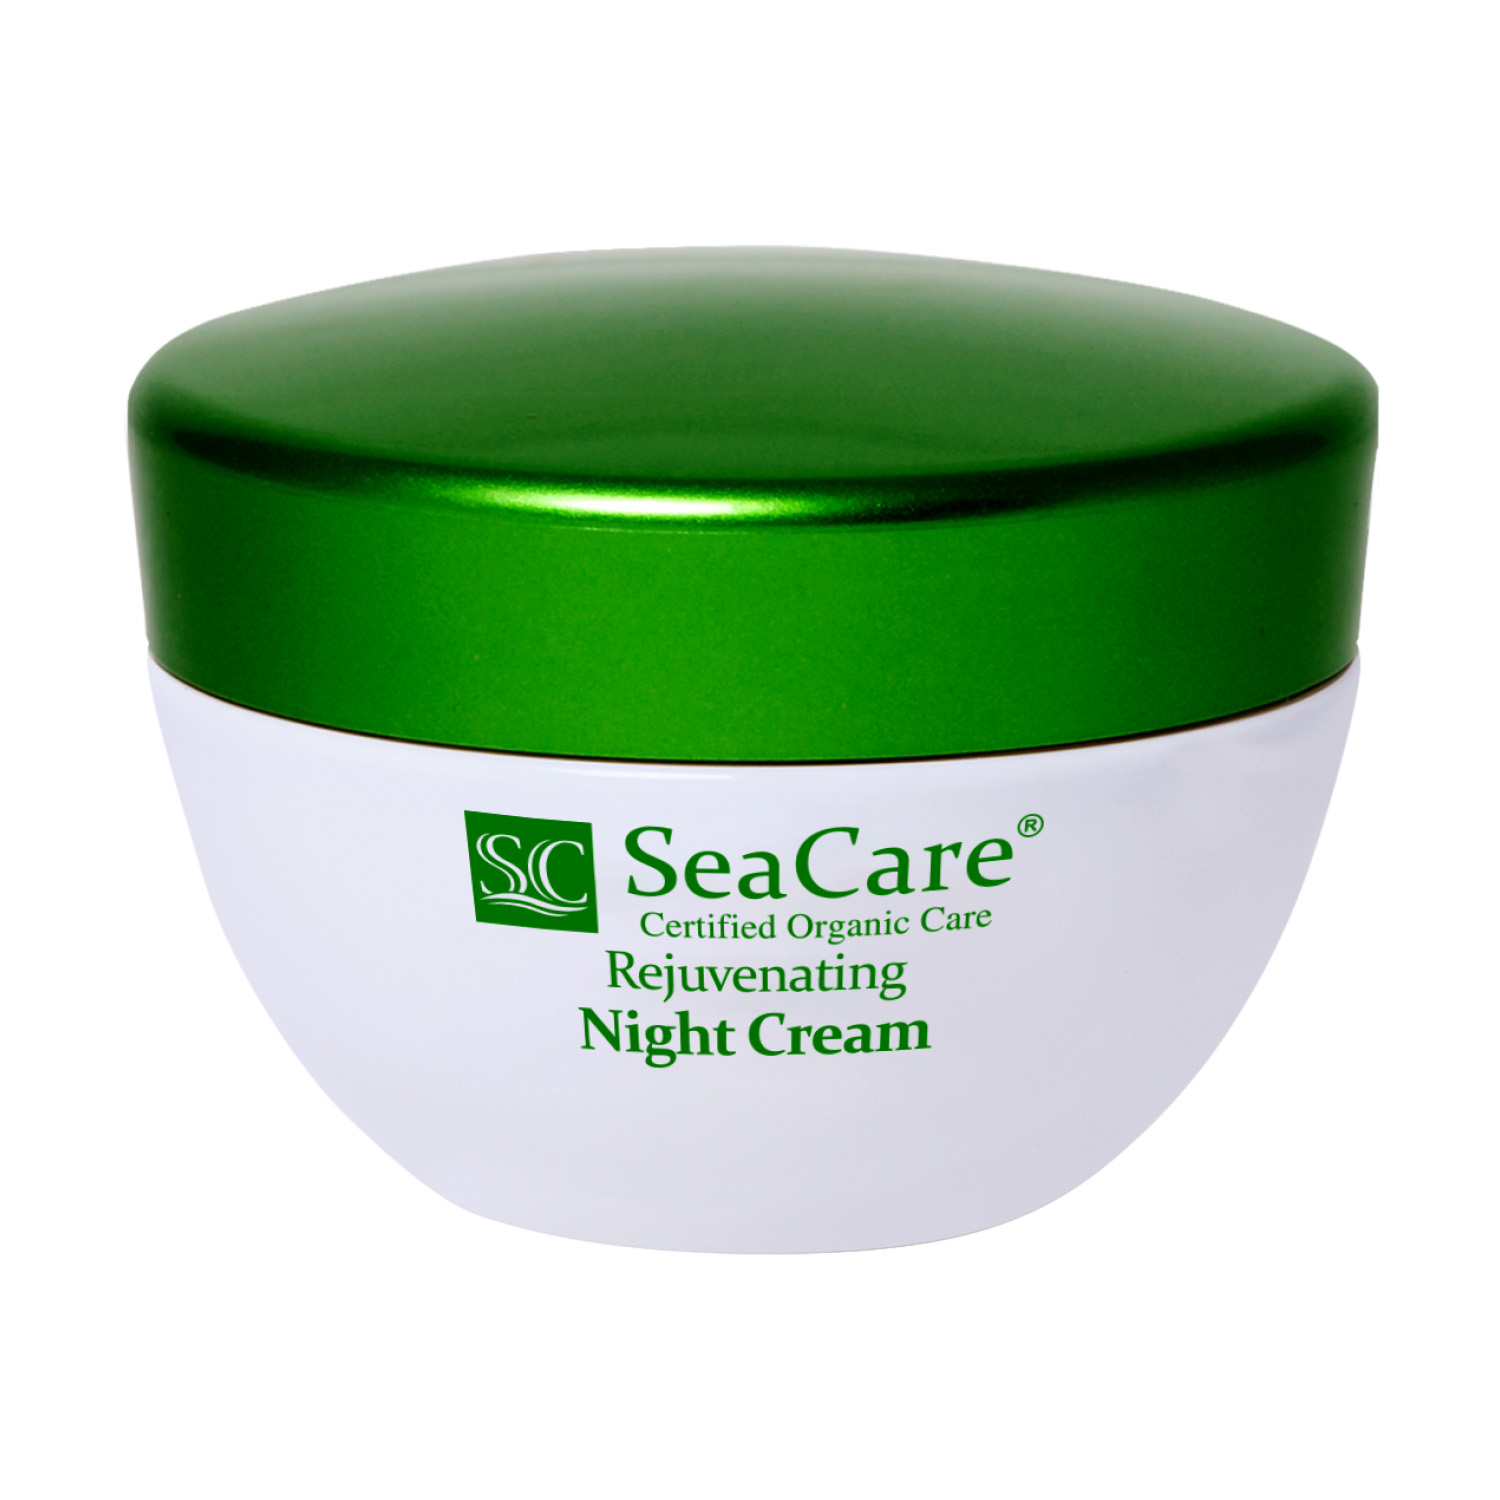 Крем для лица SeaCare ночной с гиалуроновой кислотой витамином е и маслами seacare органический омолаживающий ночной крем для лица с гиалуроновой кислотой витамином е маслами 50